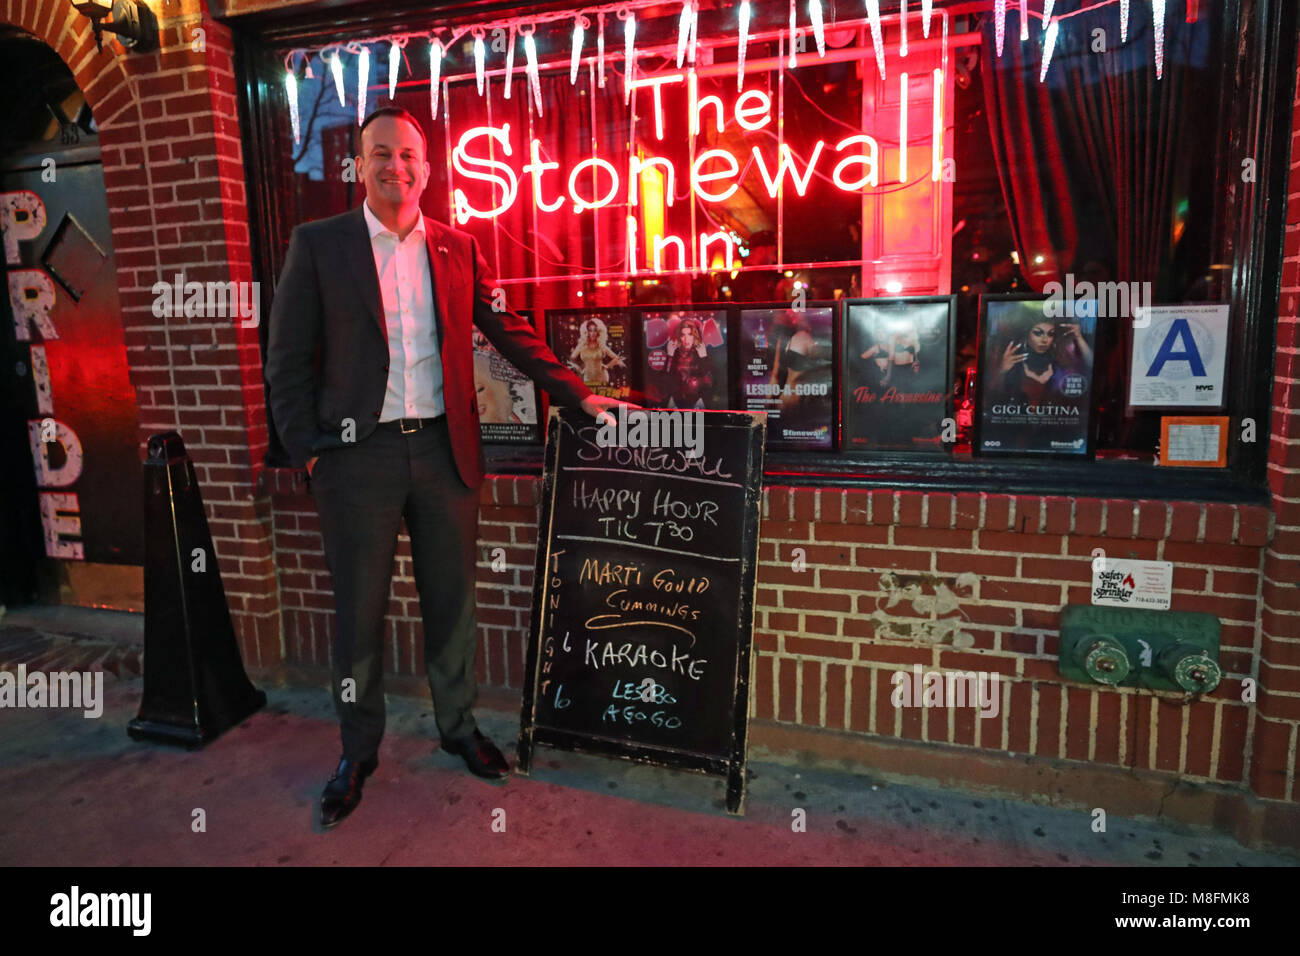 Taoiseach irlandés Leo Varadkar posa para una foto fuera del Stonewall Inn, un icónico sitio para el movimiento por los derechos de los homosexuales, en la ciudad de New York's Greenwich Village. Foto de stock